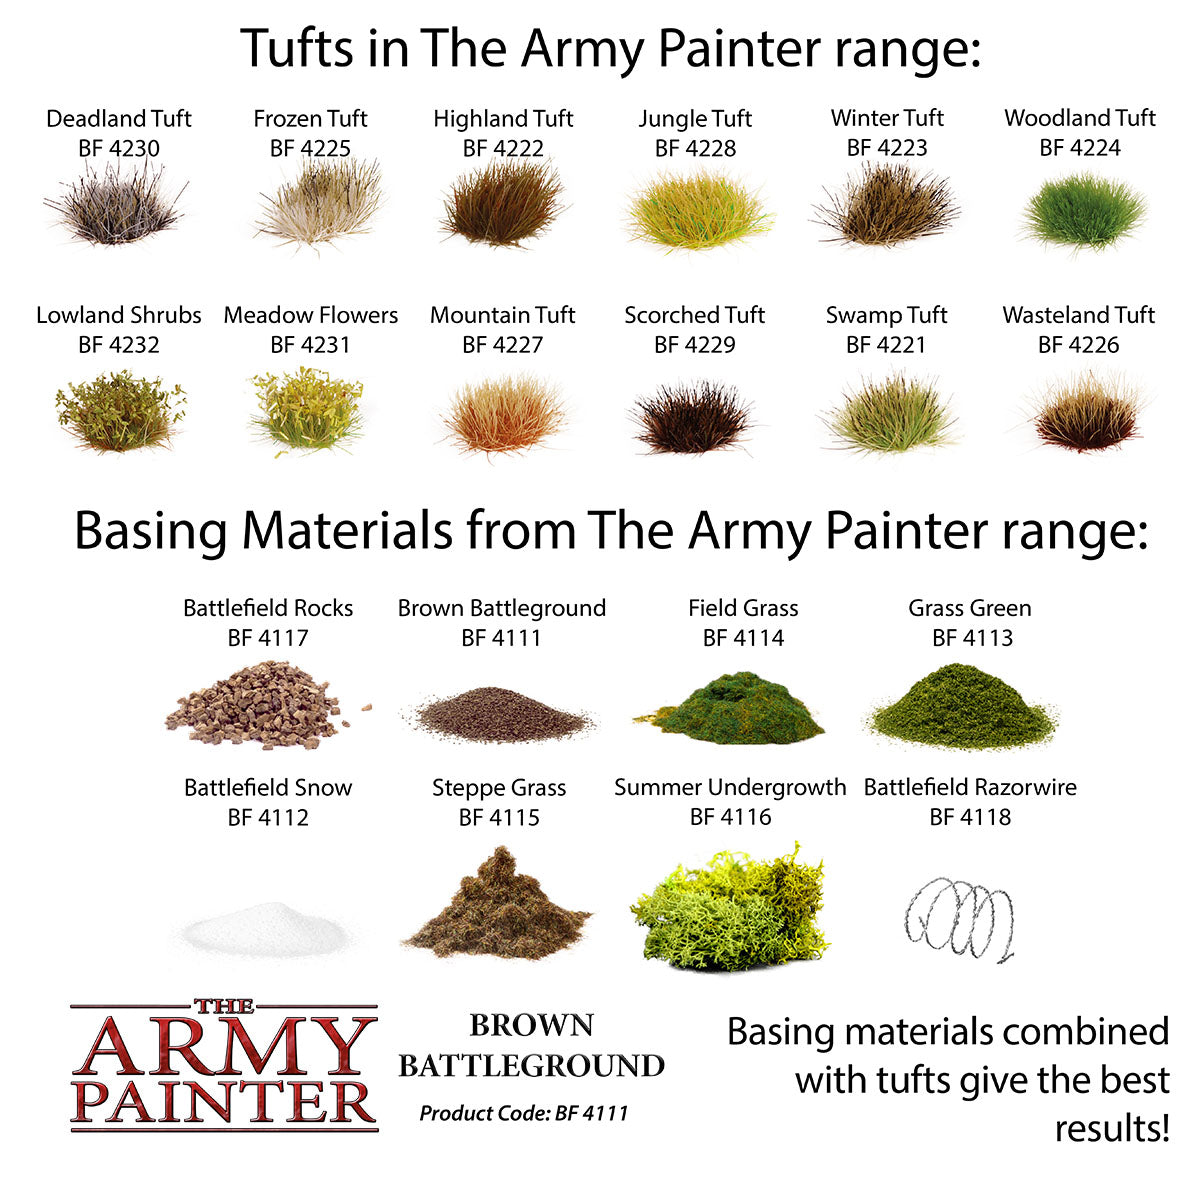 The Army Painter - Brown Battleground BF4111